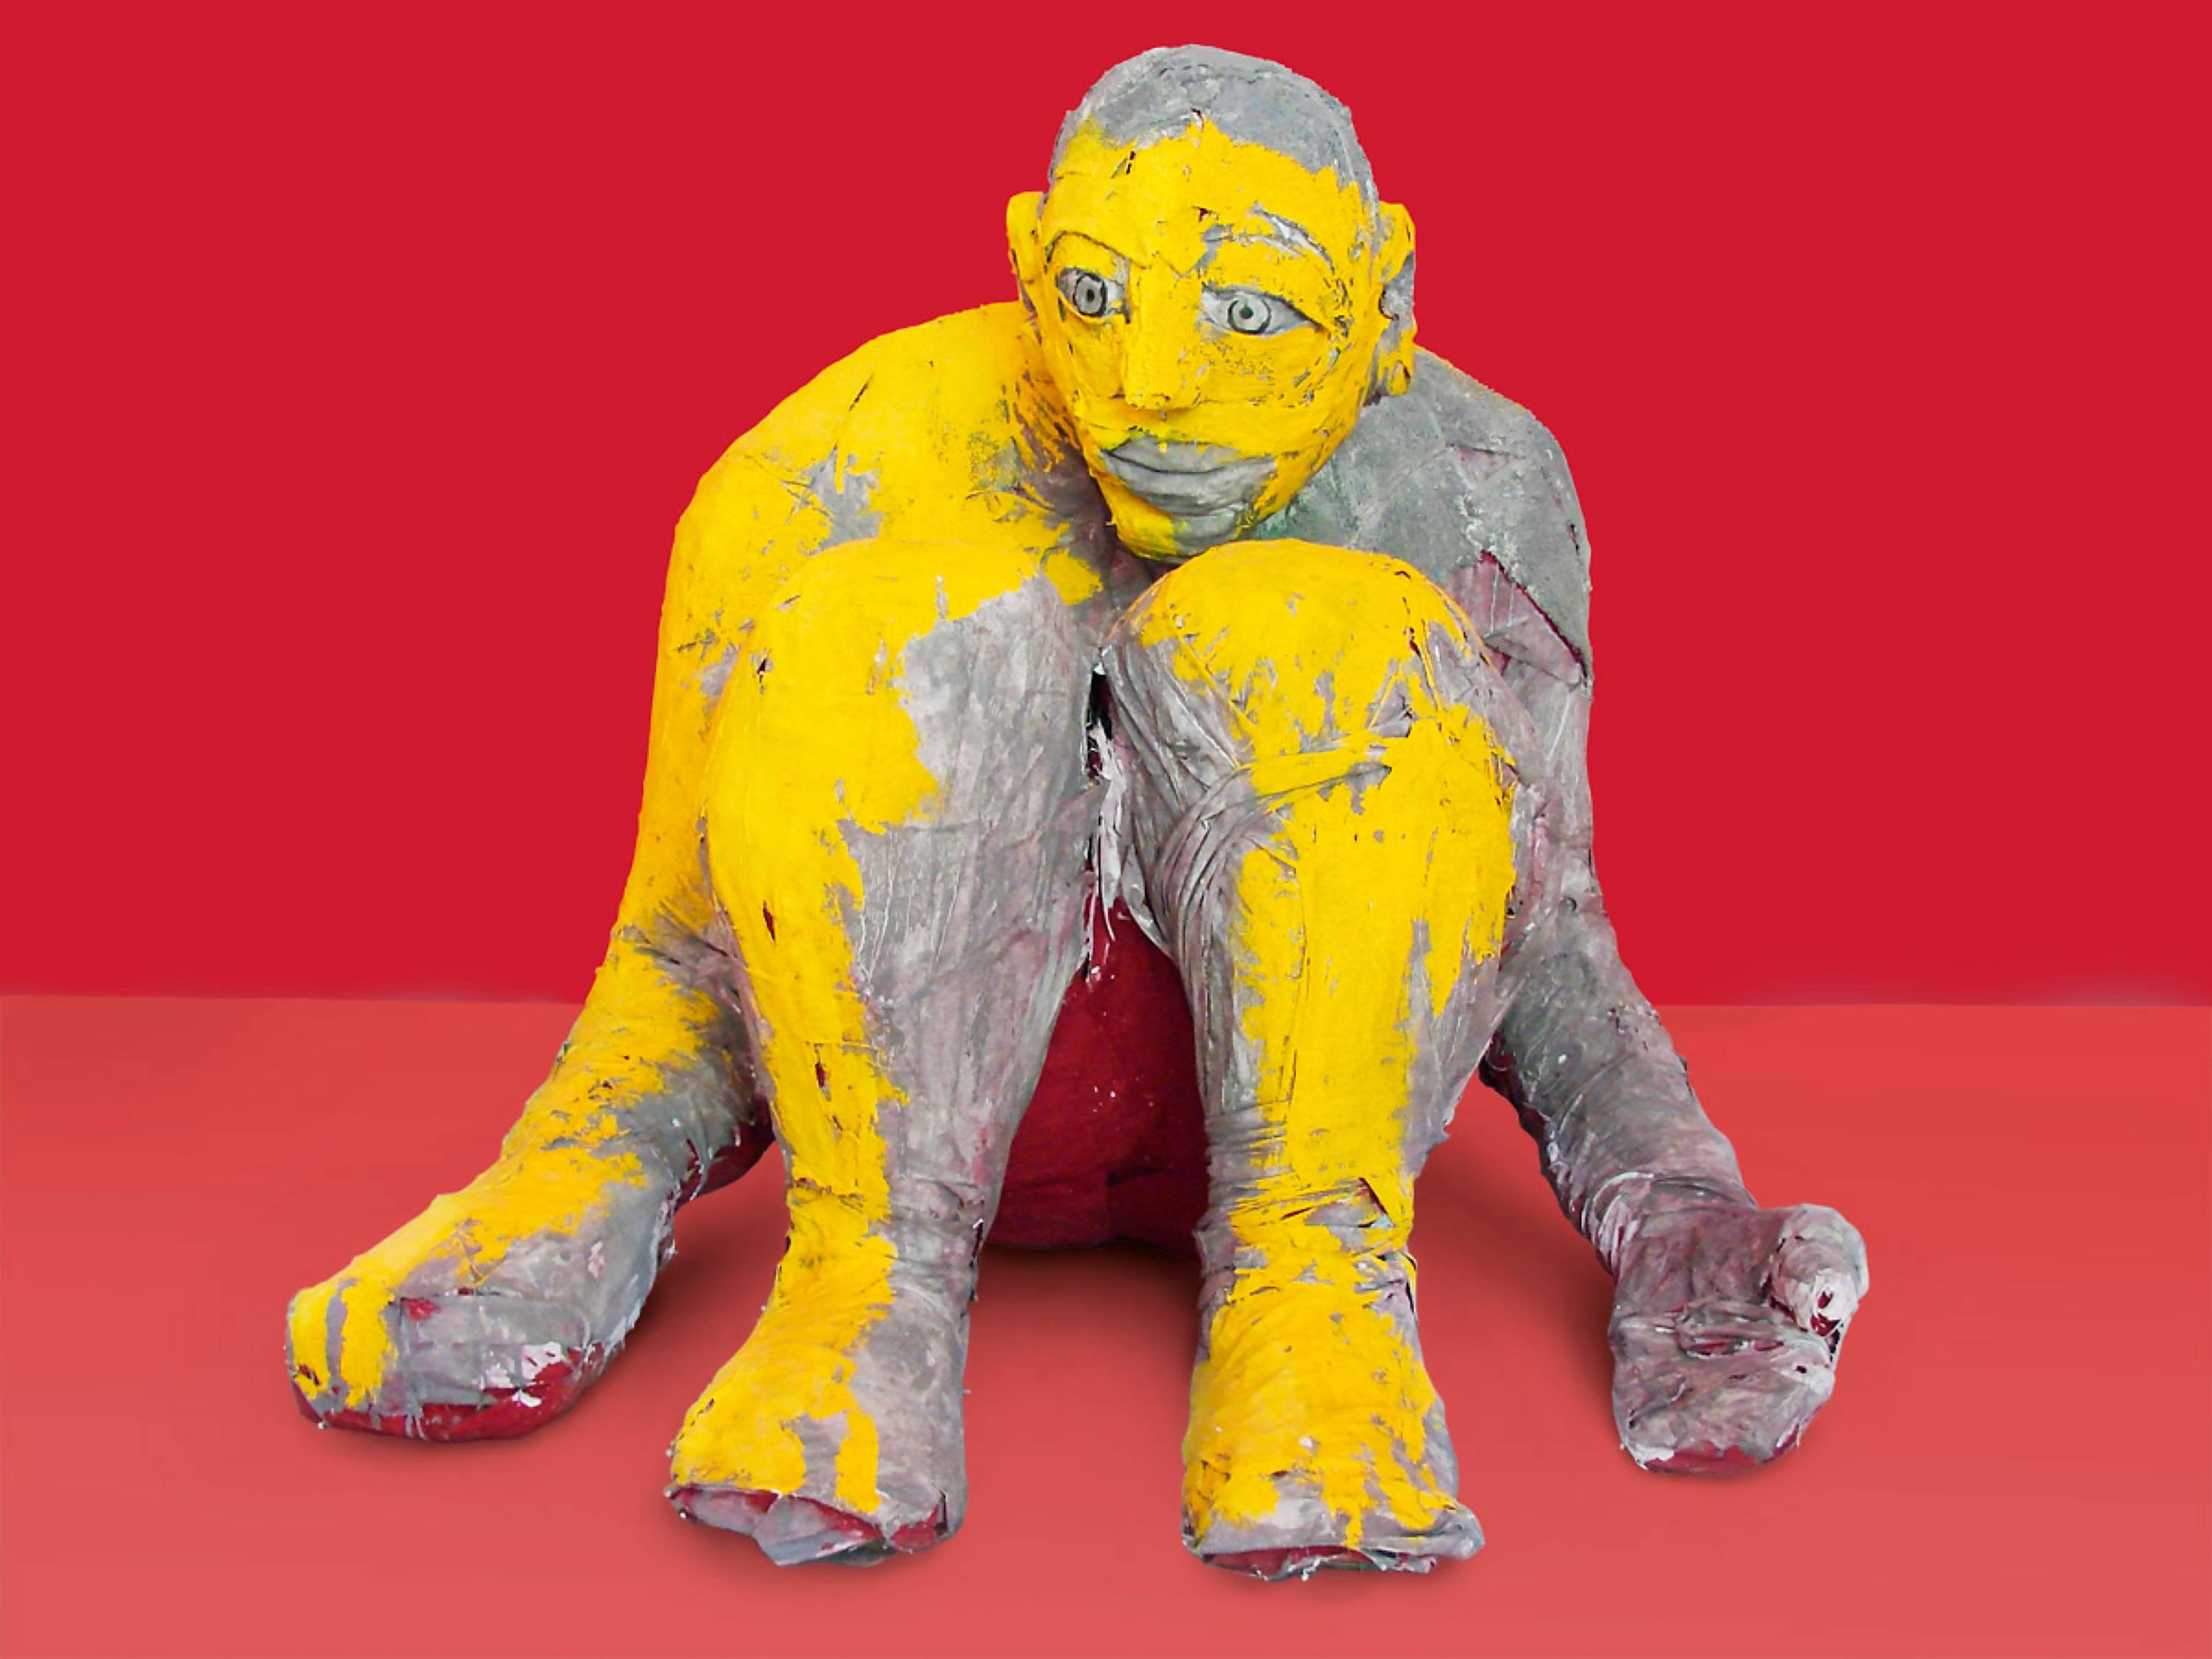 Ulysses - Contemporary, Sculpture, Figurative, Yellow, Gray, Human, Hero - Beige Figurative Sculpture by Alexandru Rădvan